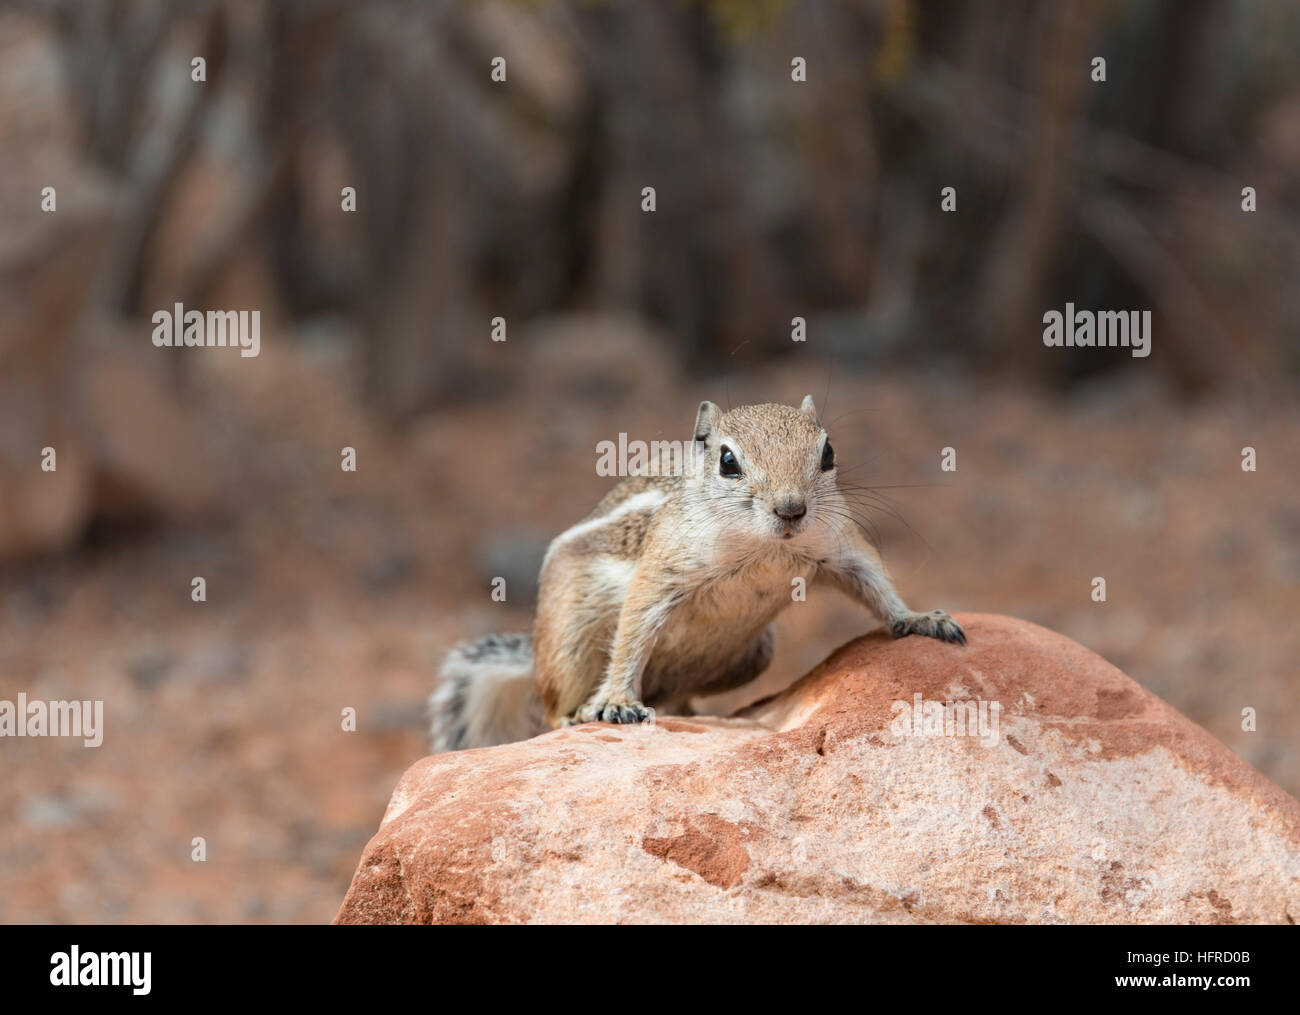 Harris di antilopi scoiattolo (Ammospermophilus harrisii) su roccia, la Valle del Fuoco, Nevada, STATI UNITI D'AMERICA Foto Stock